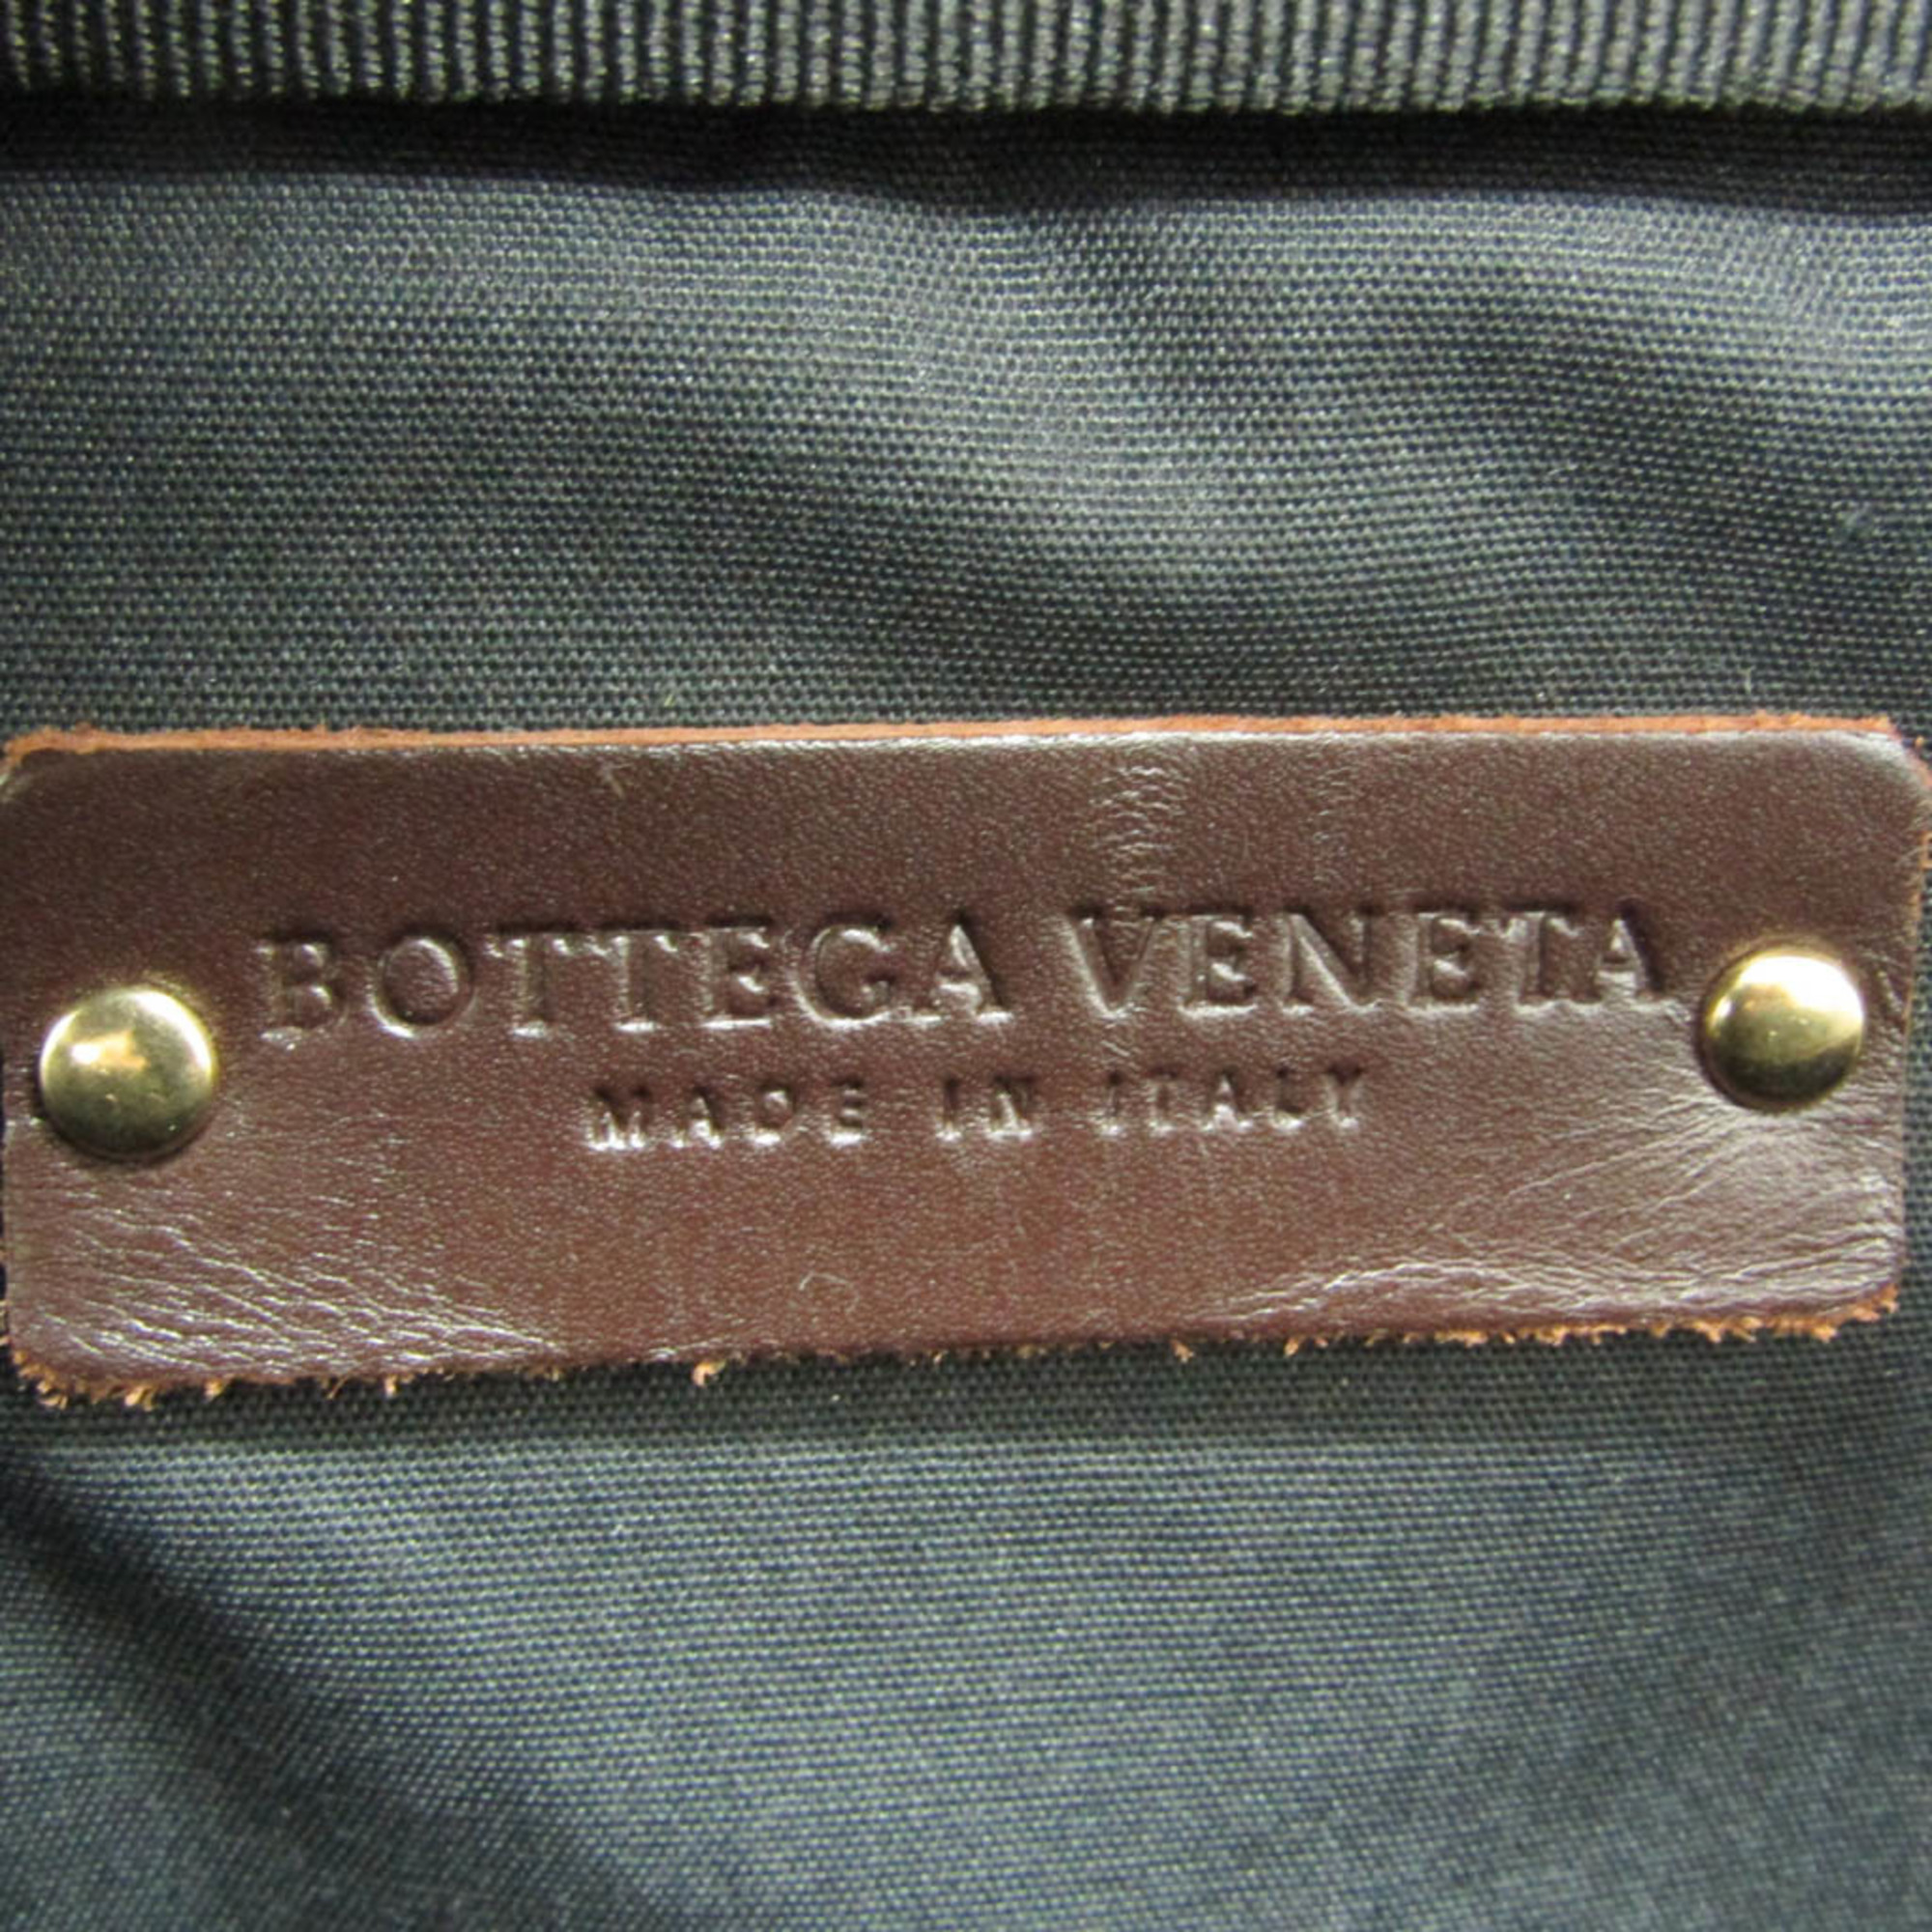 ボッテガ・ヴェネタ(Bottega Veneta) マルコポーロ メンズ レザー,PVC ブリーフケース,ハンドバッグ ブラック,ダークブラウン